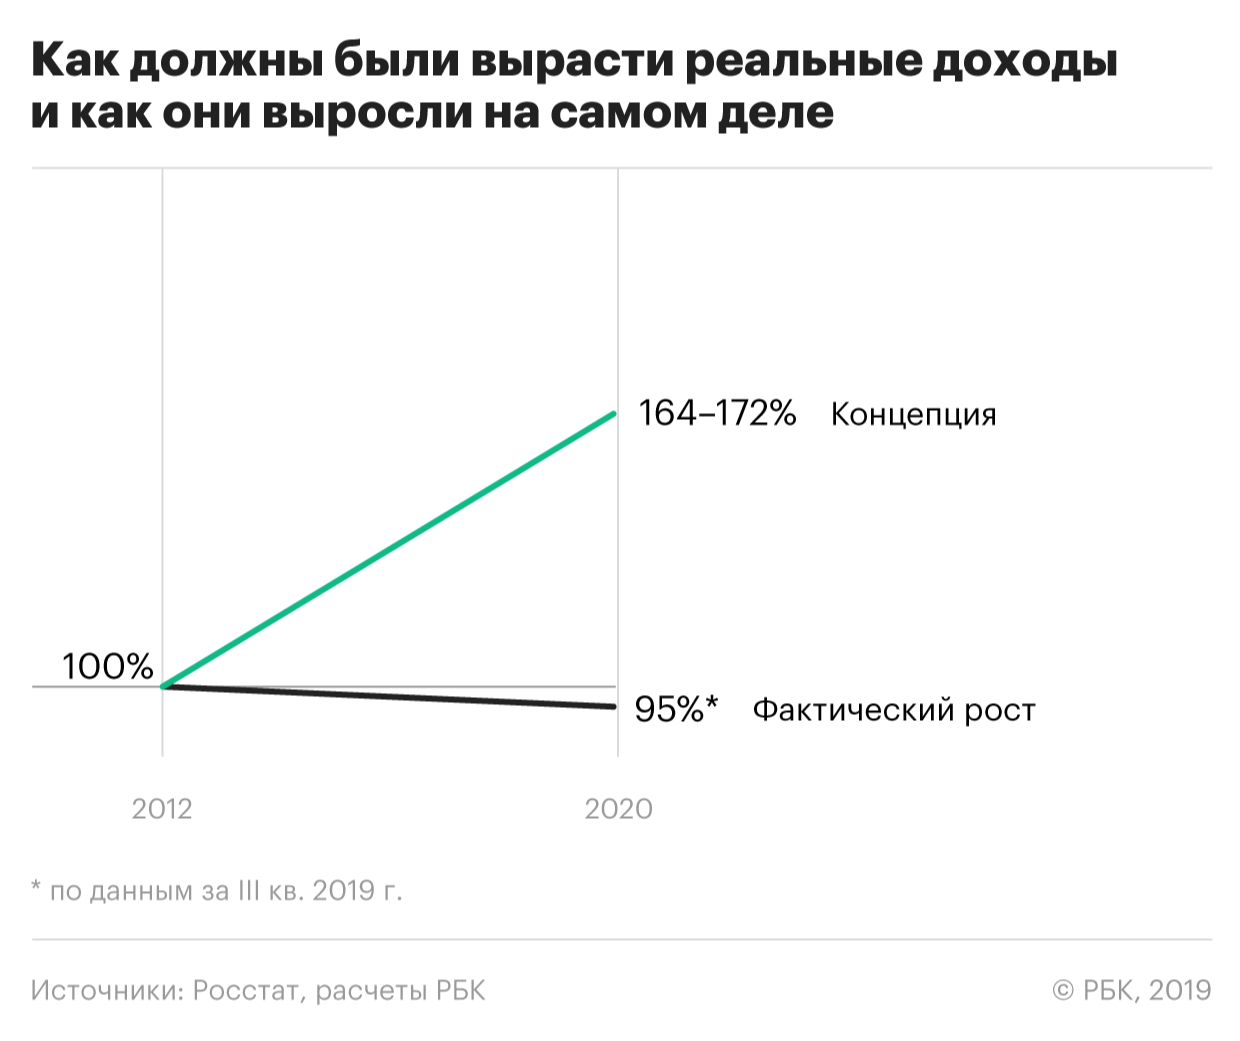 Концепция развития России до 2020 года оказалась невыполнимой